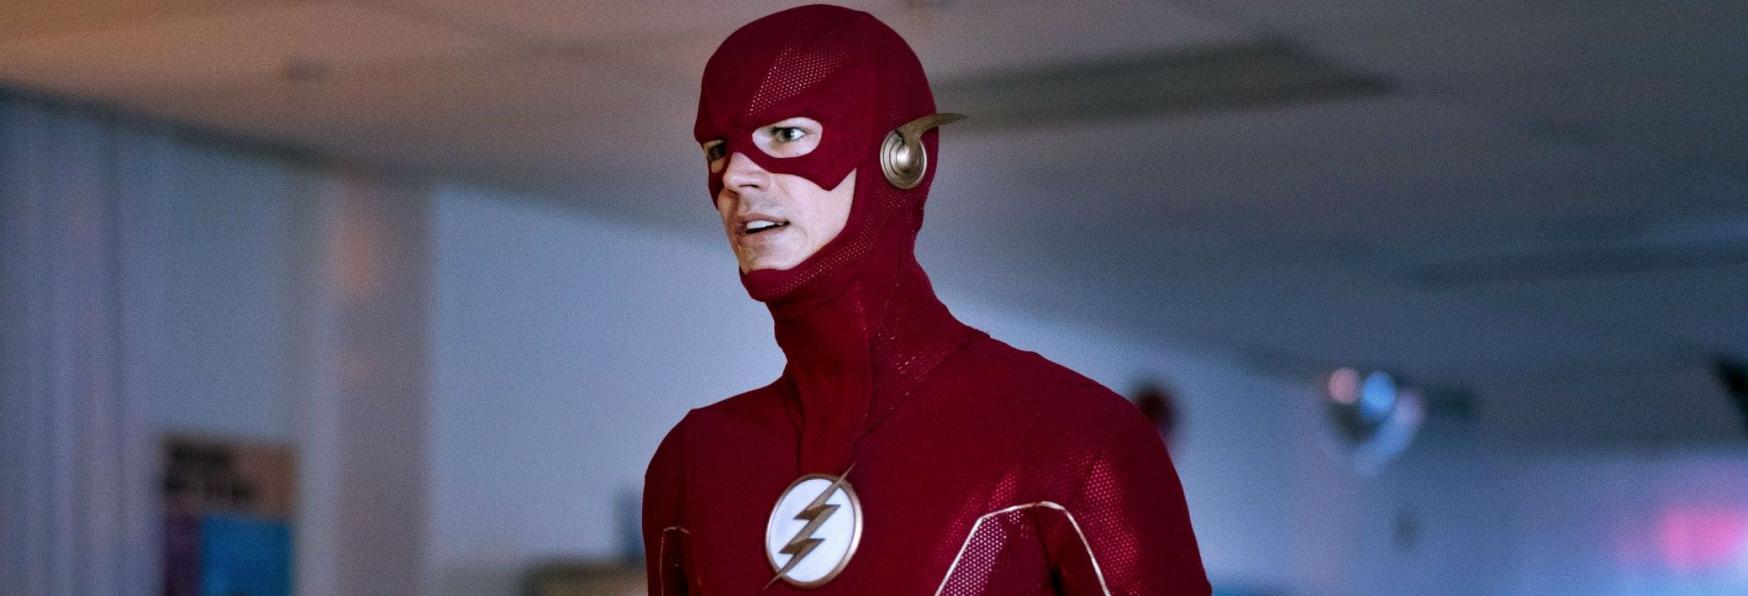 The Flash 7: la Produzione della Serie TV si ferma a causa di alcuni Positivi al COVID-19